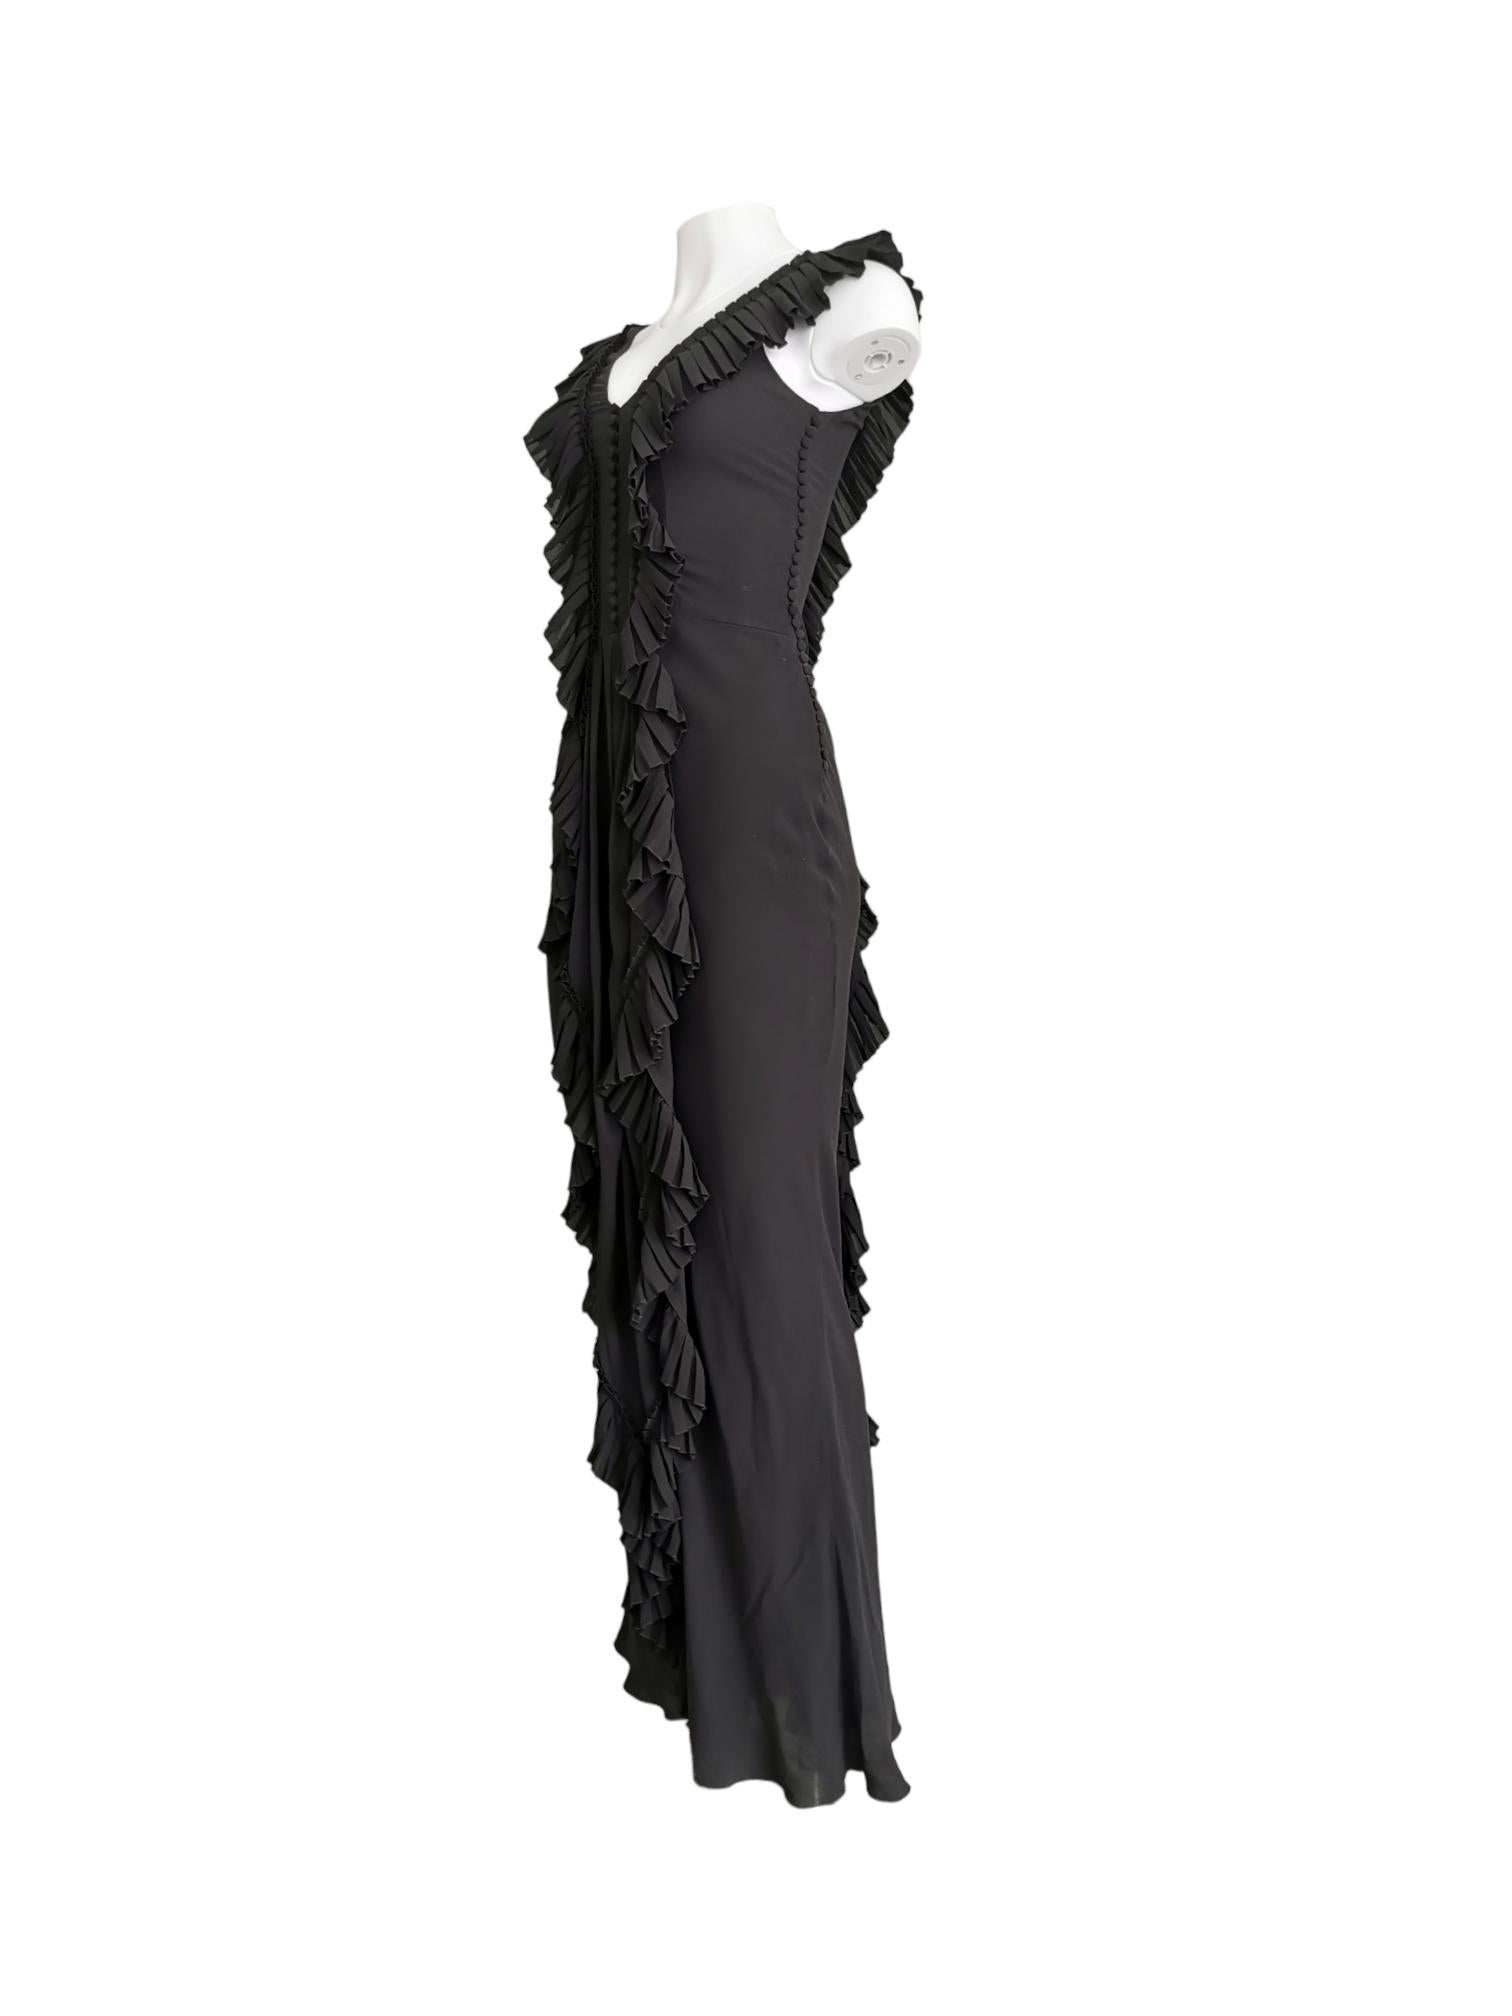 Wunderschönes schwarzes Seidenrüschenkleid mit Knopfleiste auf der linken Seite und in der Mitte des Oberkörpers aus der Galliano for Dior FW 2005 Kollektion.

Größe: UK 10

MATERIAL: Seide

Zustand: Ausgezeichnet

